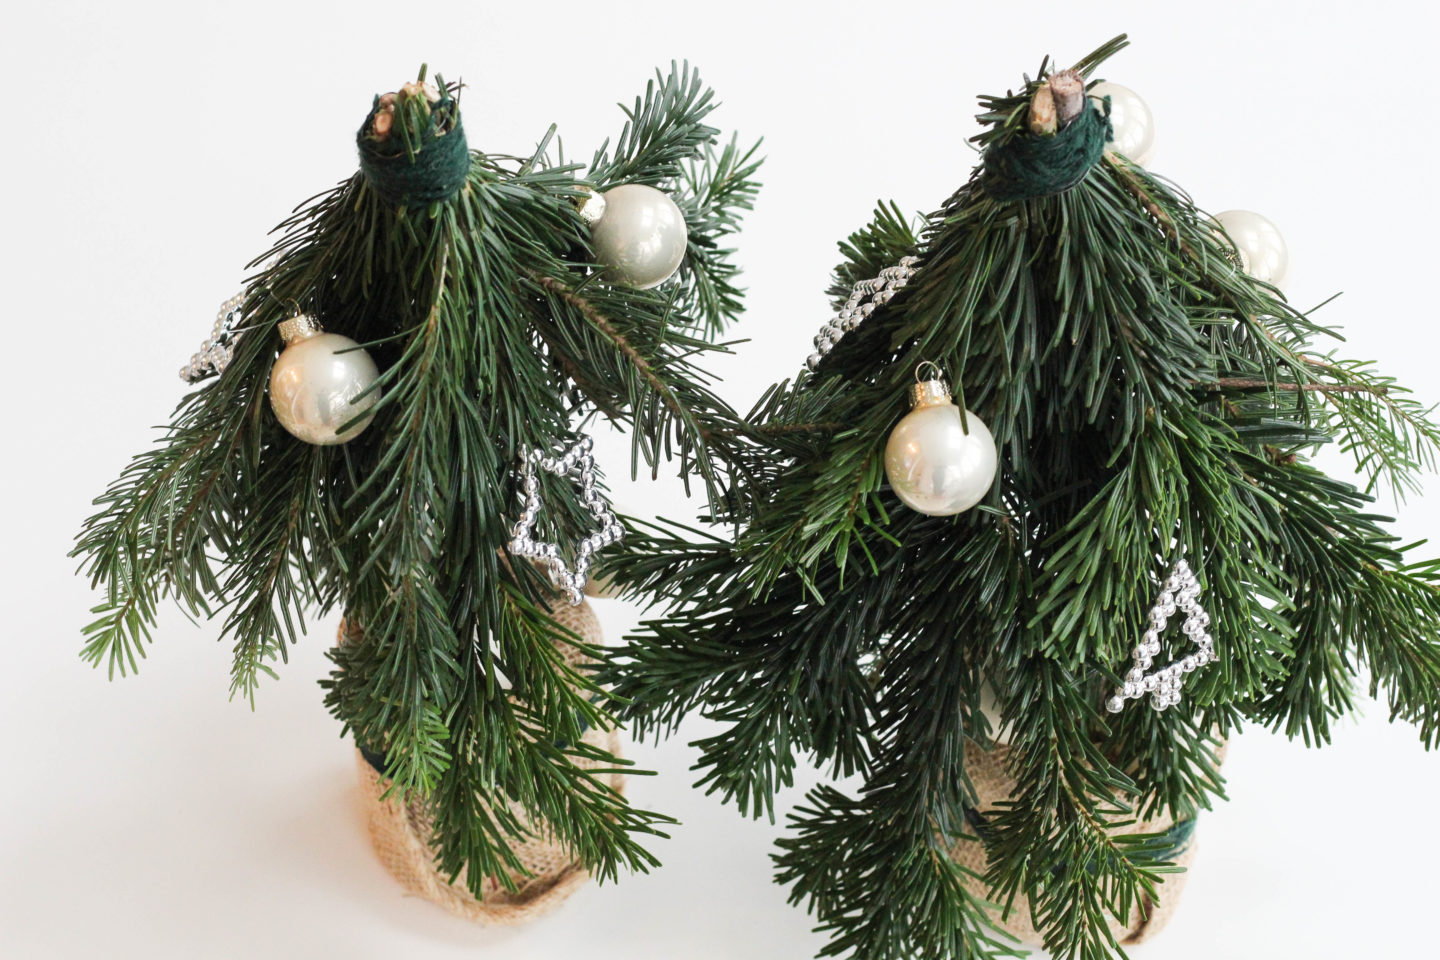 vegane-nussknoepfe-diy-weihnachtsbaum-selbstgemacht-christmas-homespa-plantbased-1-von-1-7